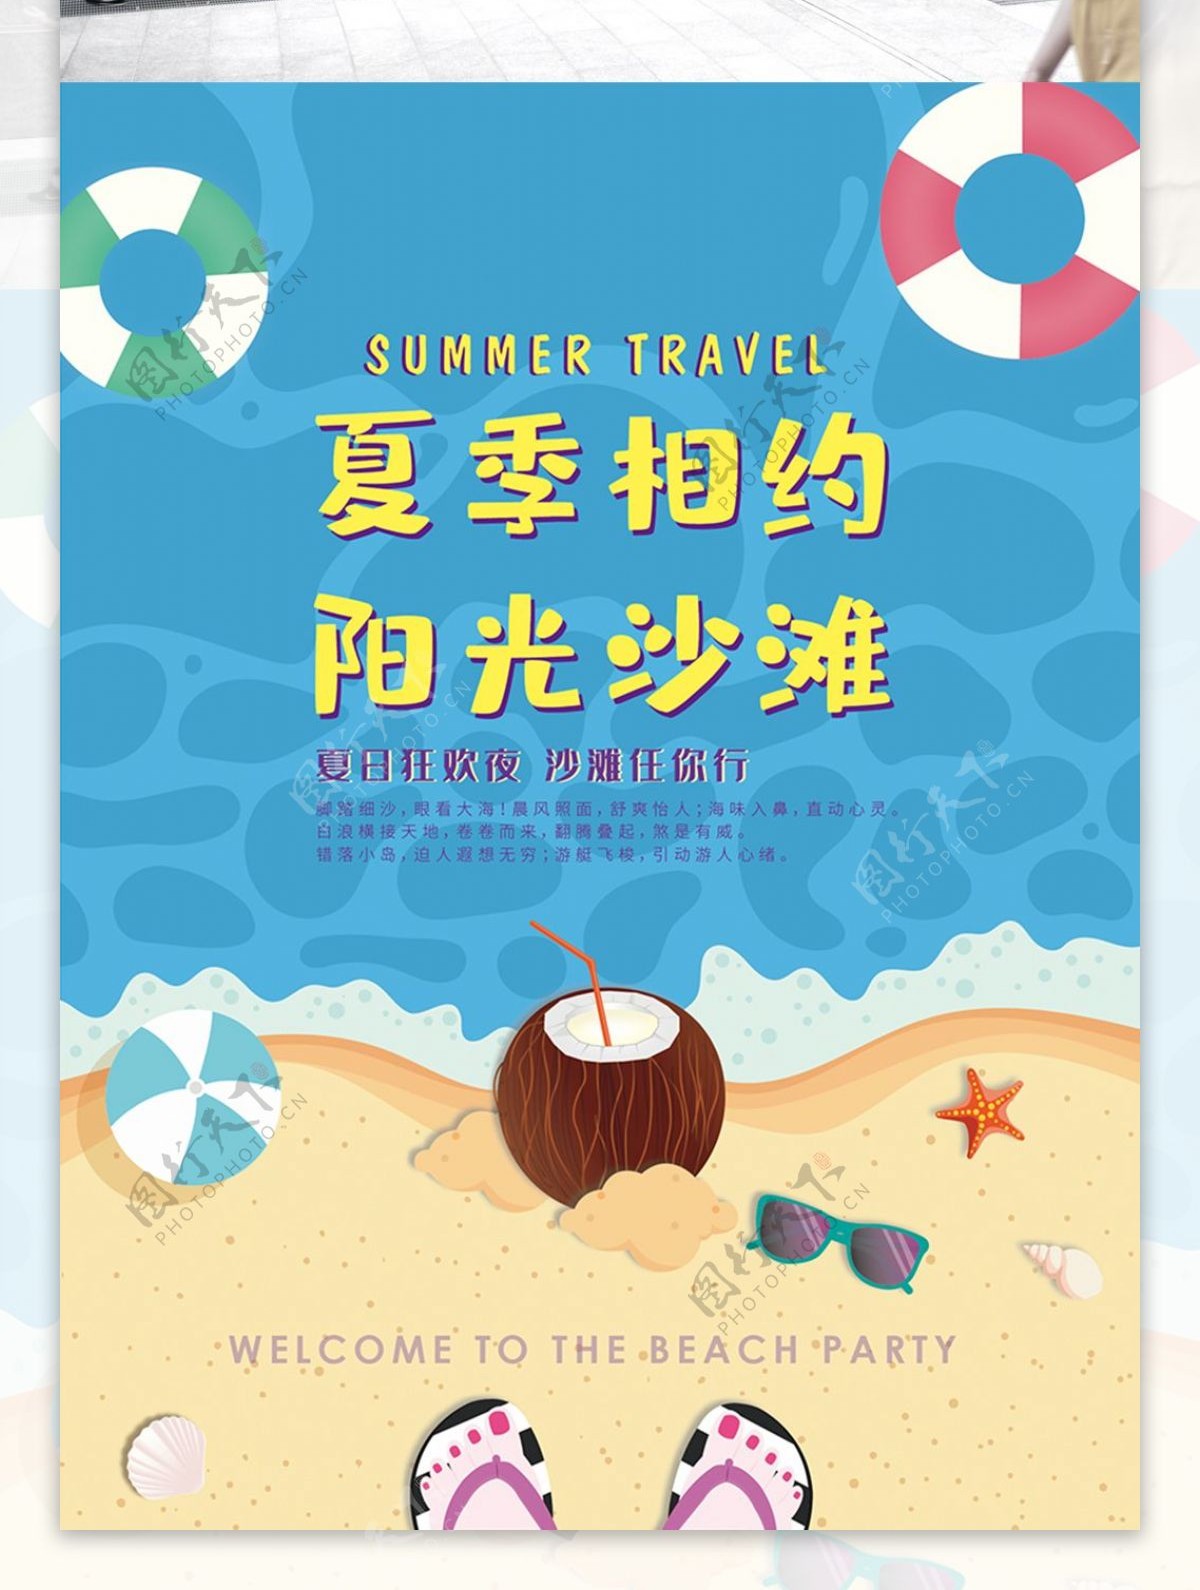 原创夏季沙滩旅游促销海报